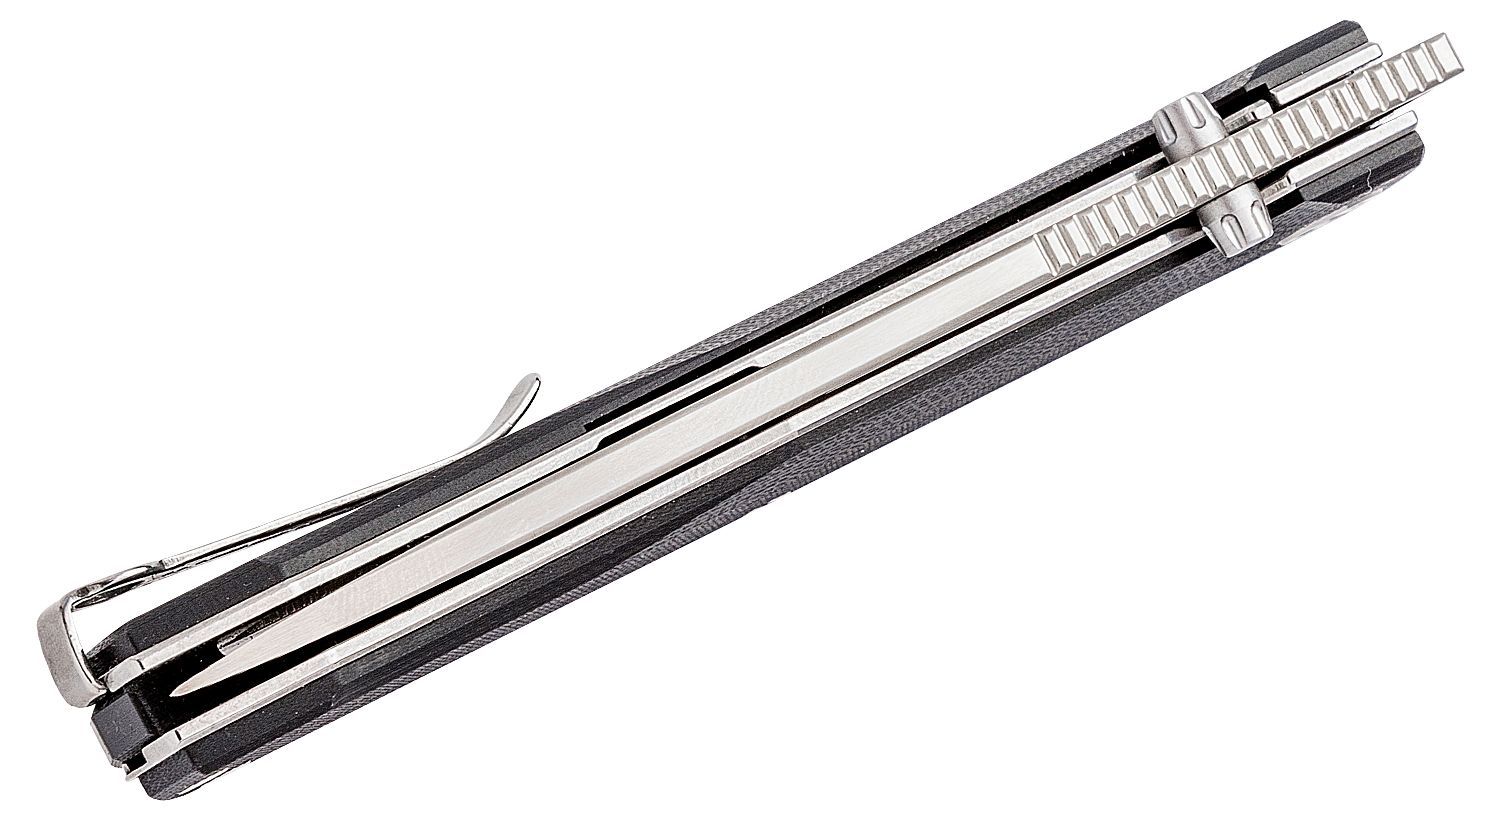 Real Steel Rokot EDC Front Flipper Liner Lock Folding Pocket Knife- 3.74  Bohler N690 Blade and G10 Handle, Designed by Ivan D. Braginets